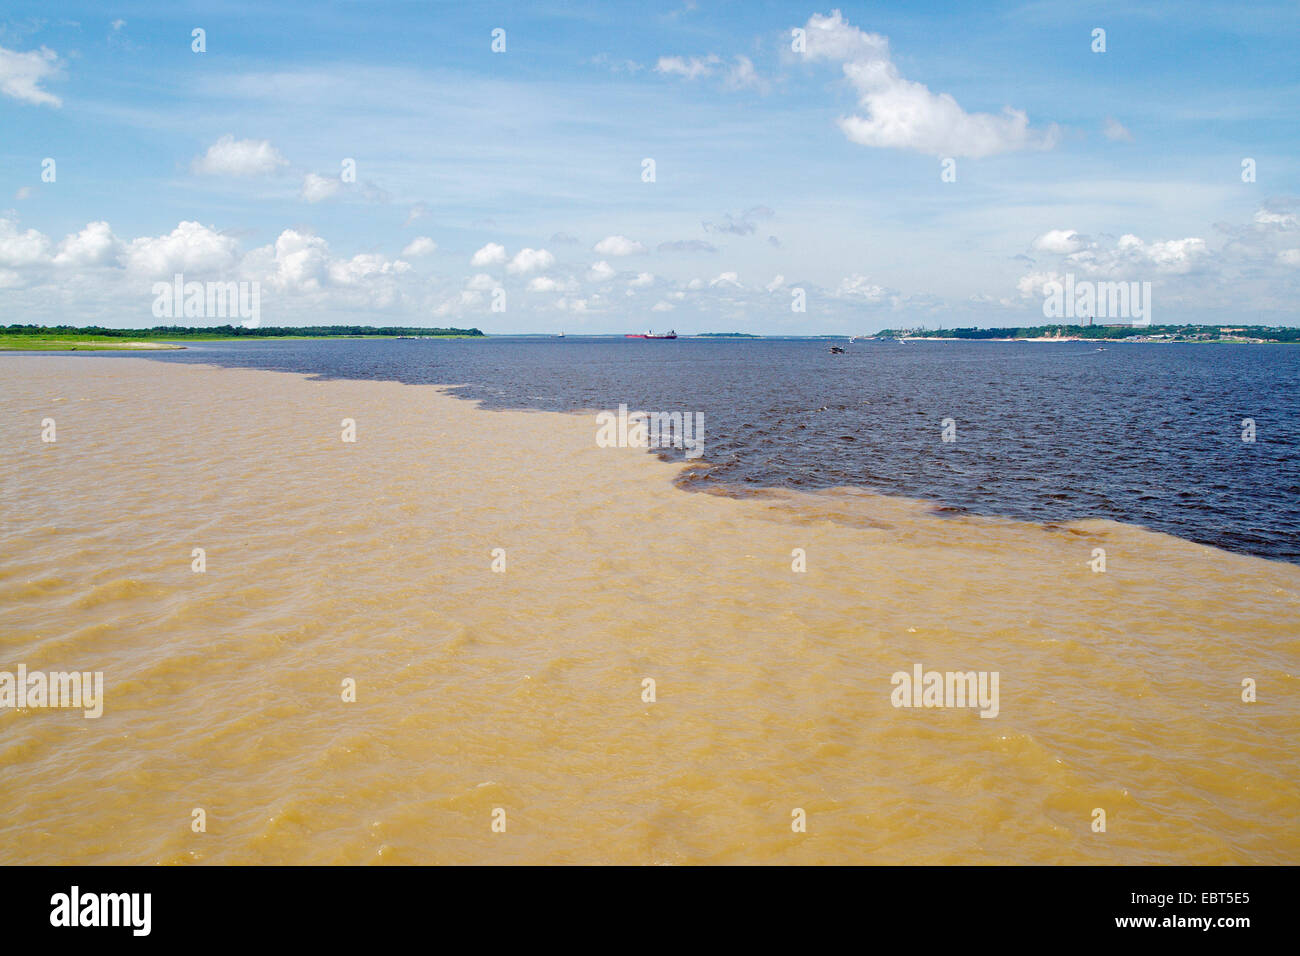 Encuentro de las aguas, la confluencia entre el Río Negro y el Río Solimán§es, Río Amazonas, Brasil Manaus Foto de stock